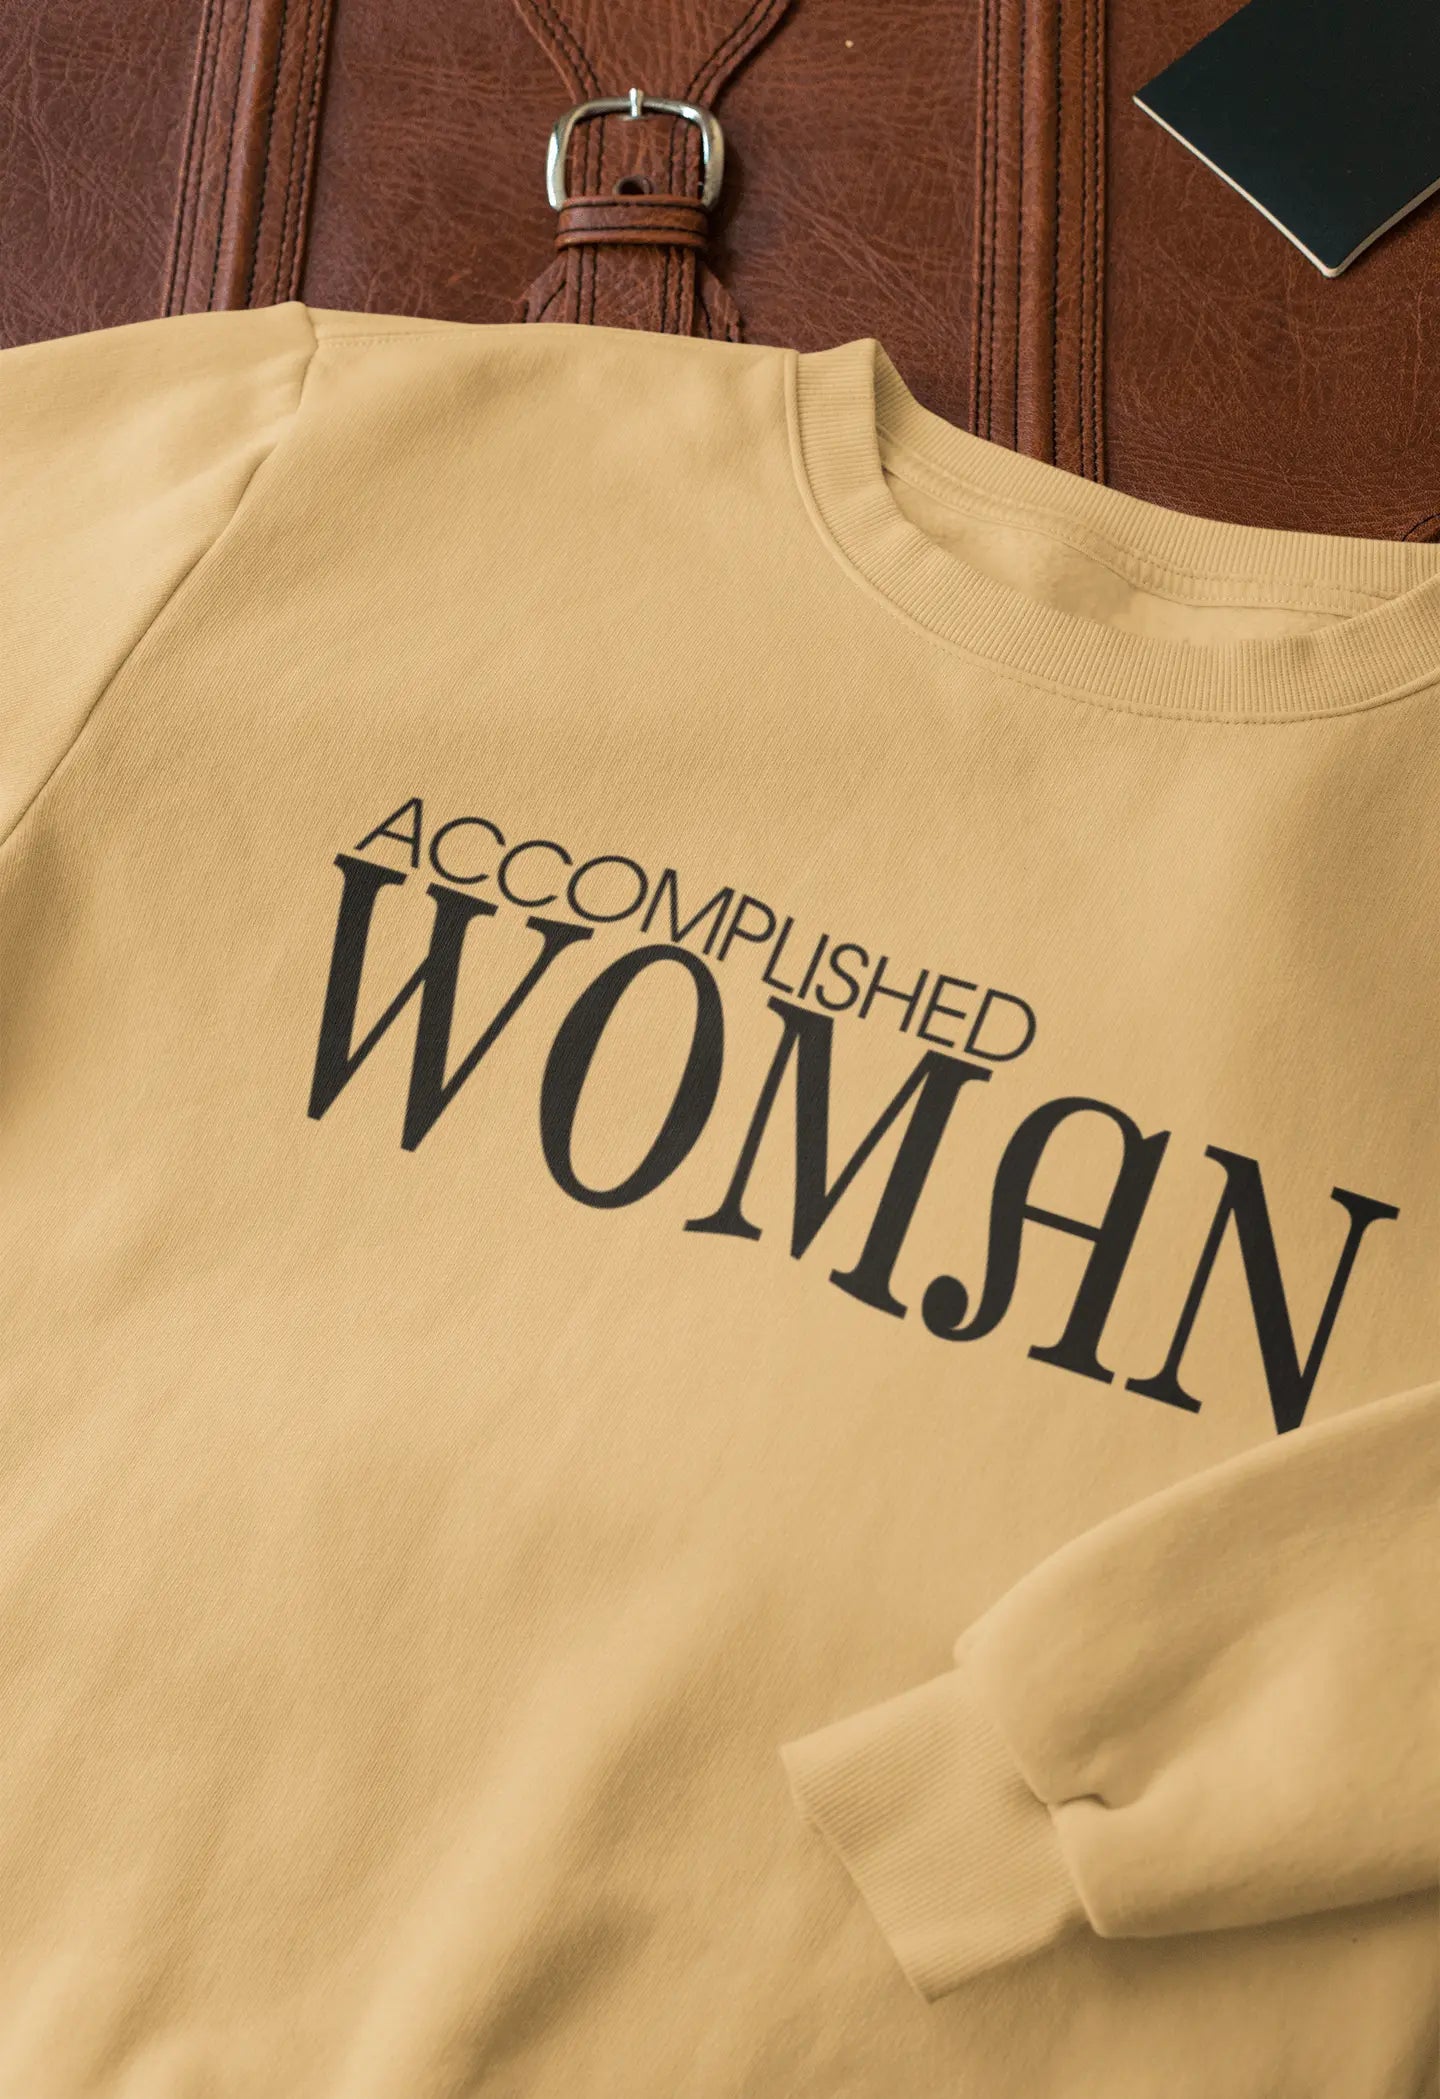 Accomplished Woman Sweatshirt - Image #2